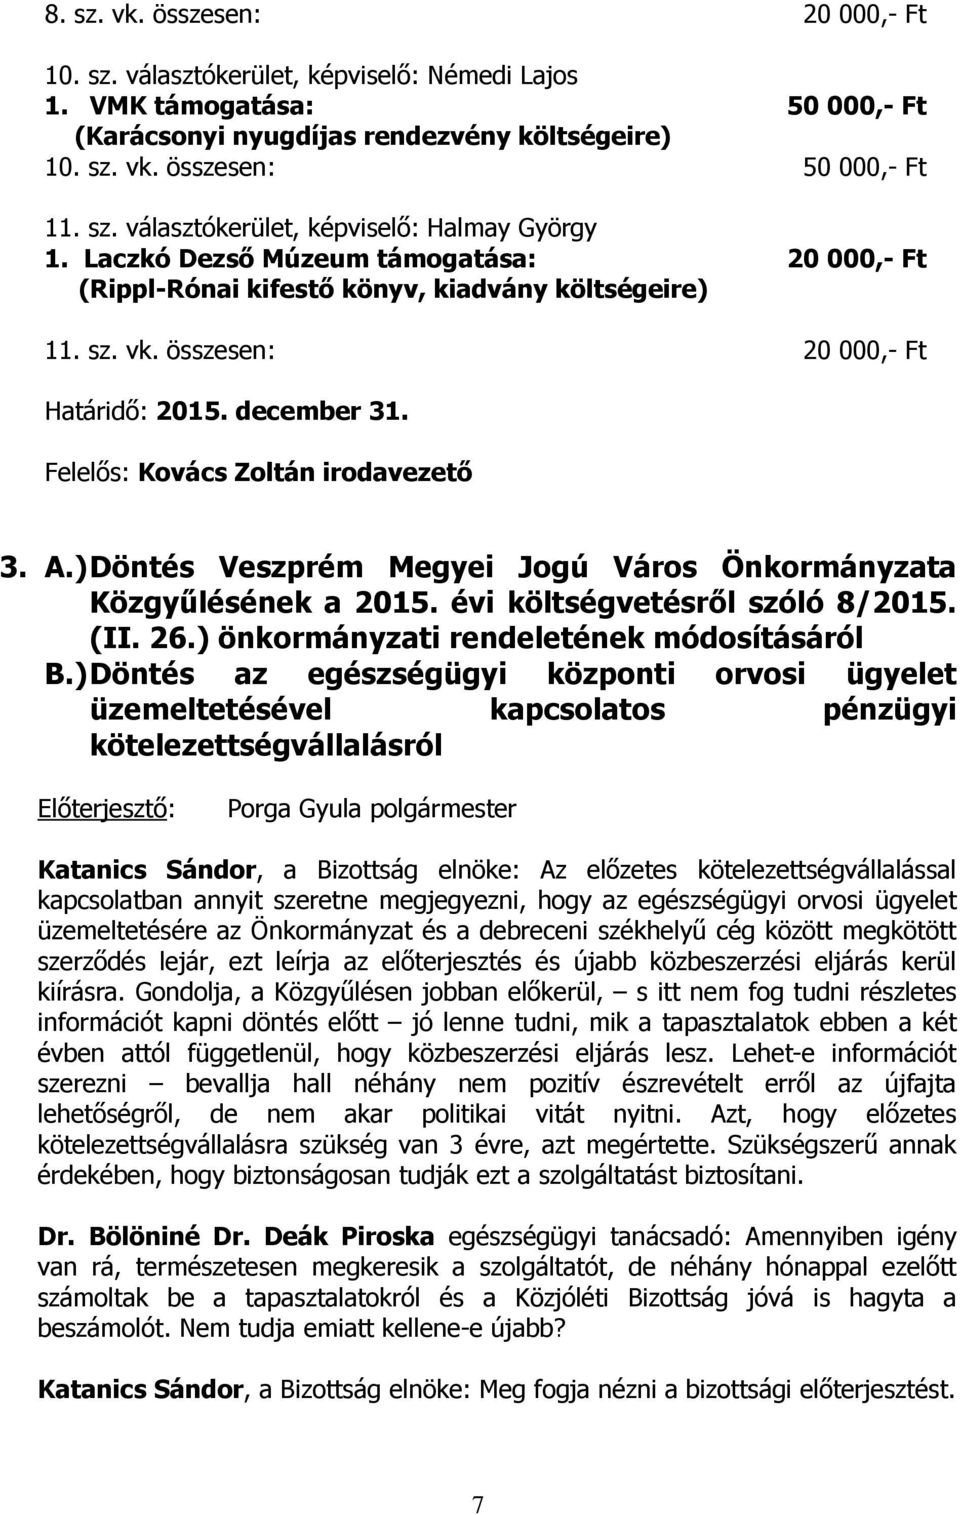 ) Döntés Veszprém Megyei Jogú Város Önkormányzata Közgyűlésének a 2015. évi költségvetésről szóló 8/2015. (II. 26.) önkormányzati rendeletének módosításáról B.